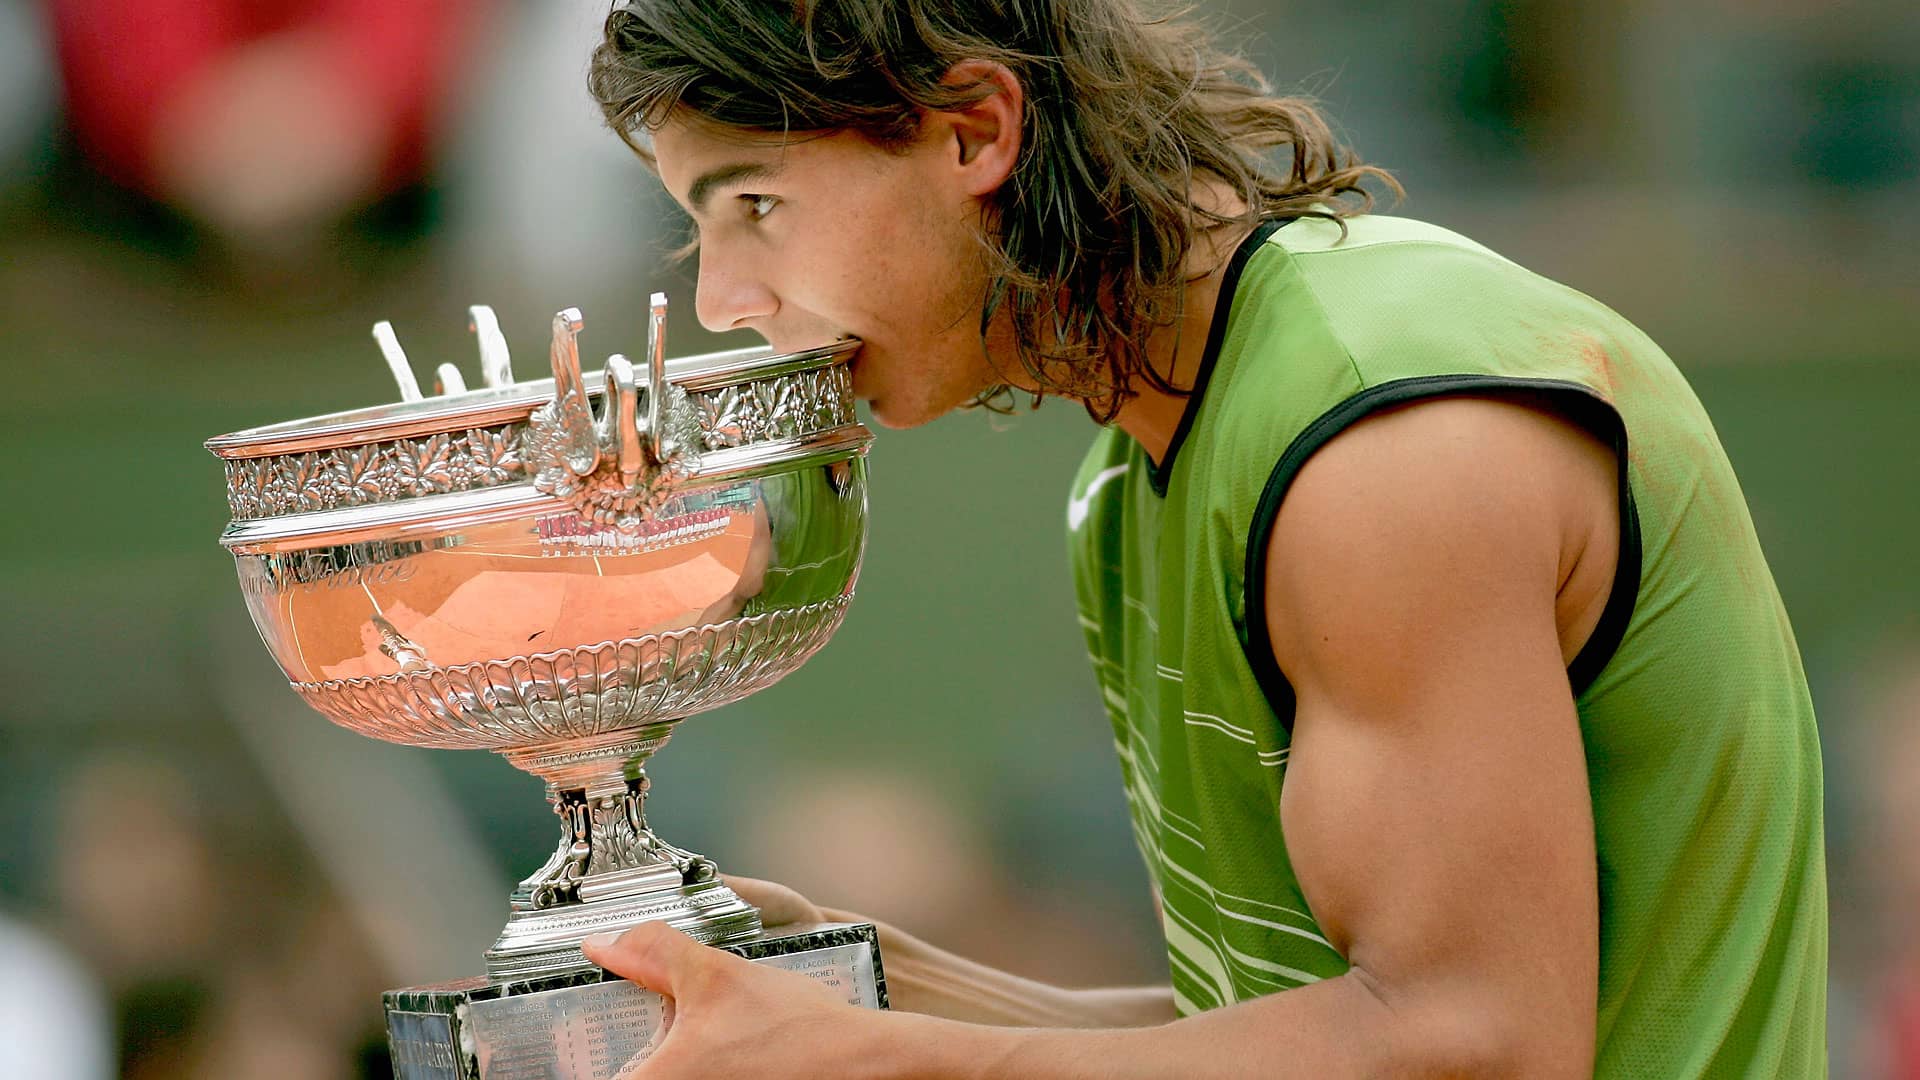 El “Equivocado” Pensamiento De Rafael Nadal Tras Ganar Roland Garros 2005 | ATP Tour | Tenis